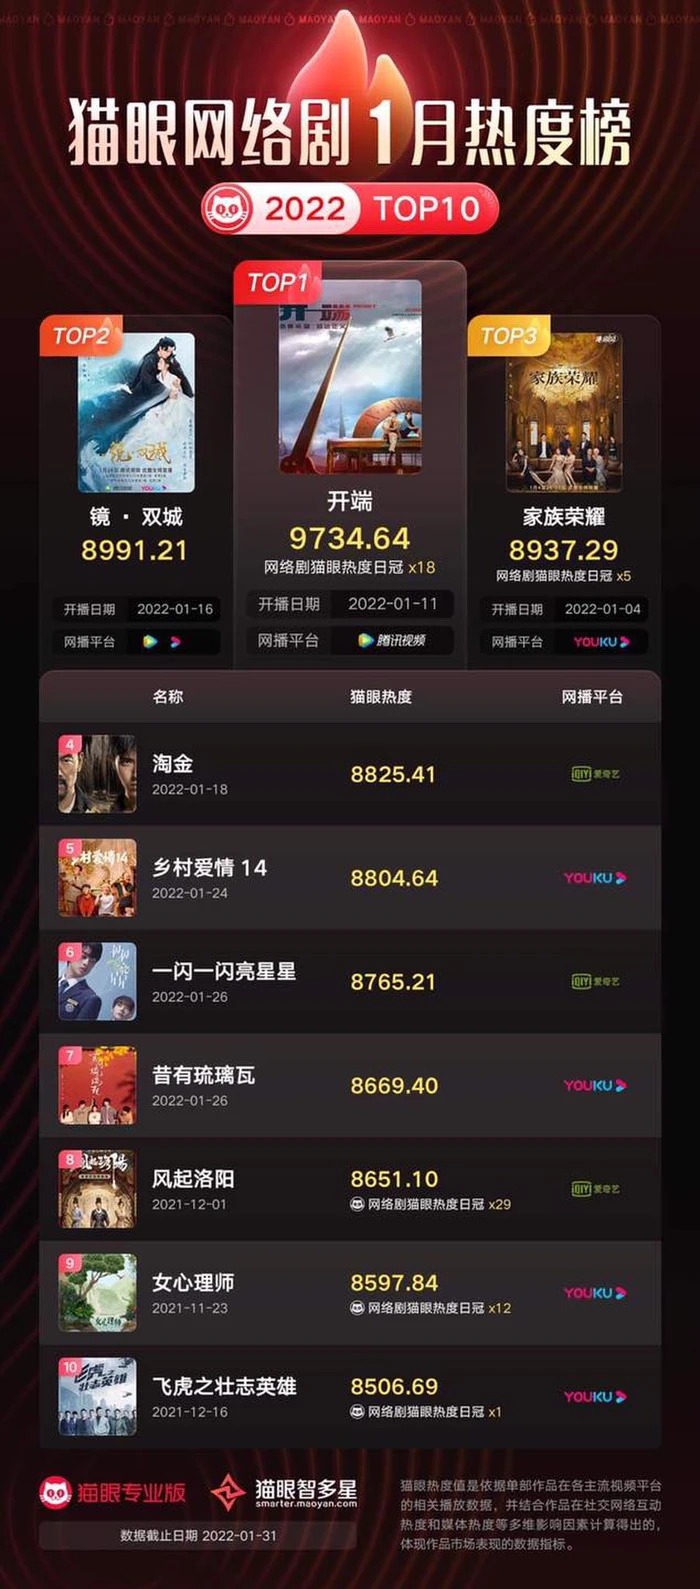 Phim của Vương Nhất Bác, Dương Tử “áp chót” top 10 phim Hoa ngữ hot nhất tháng 1 - Ảnh 1